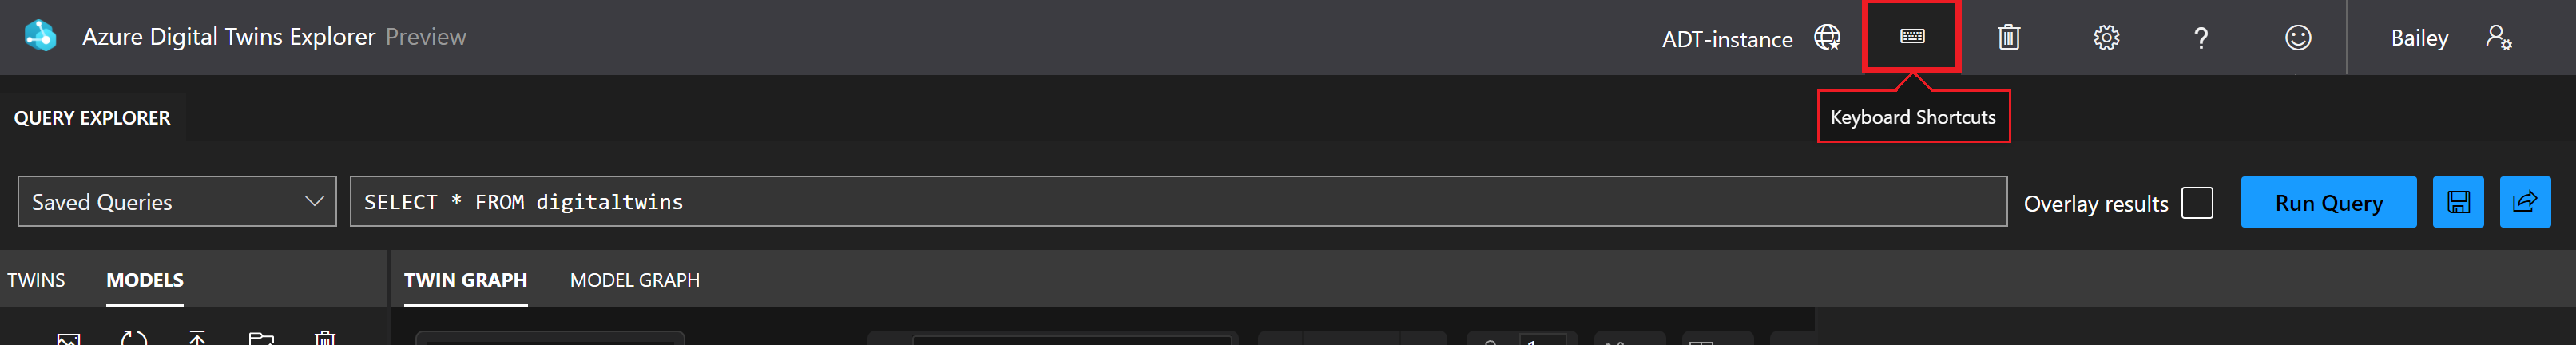 Captura de ecrã do Explorador do Azure Digital Twins. O ícone Atalhos de Teclado está realçado na barra de ferramentas superior.